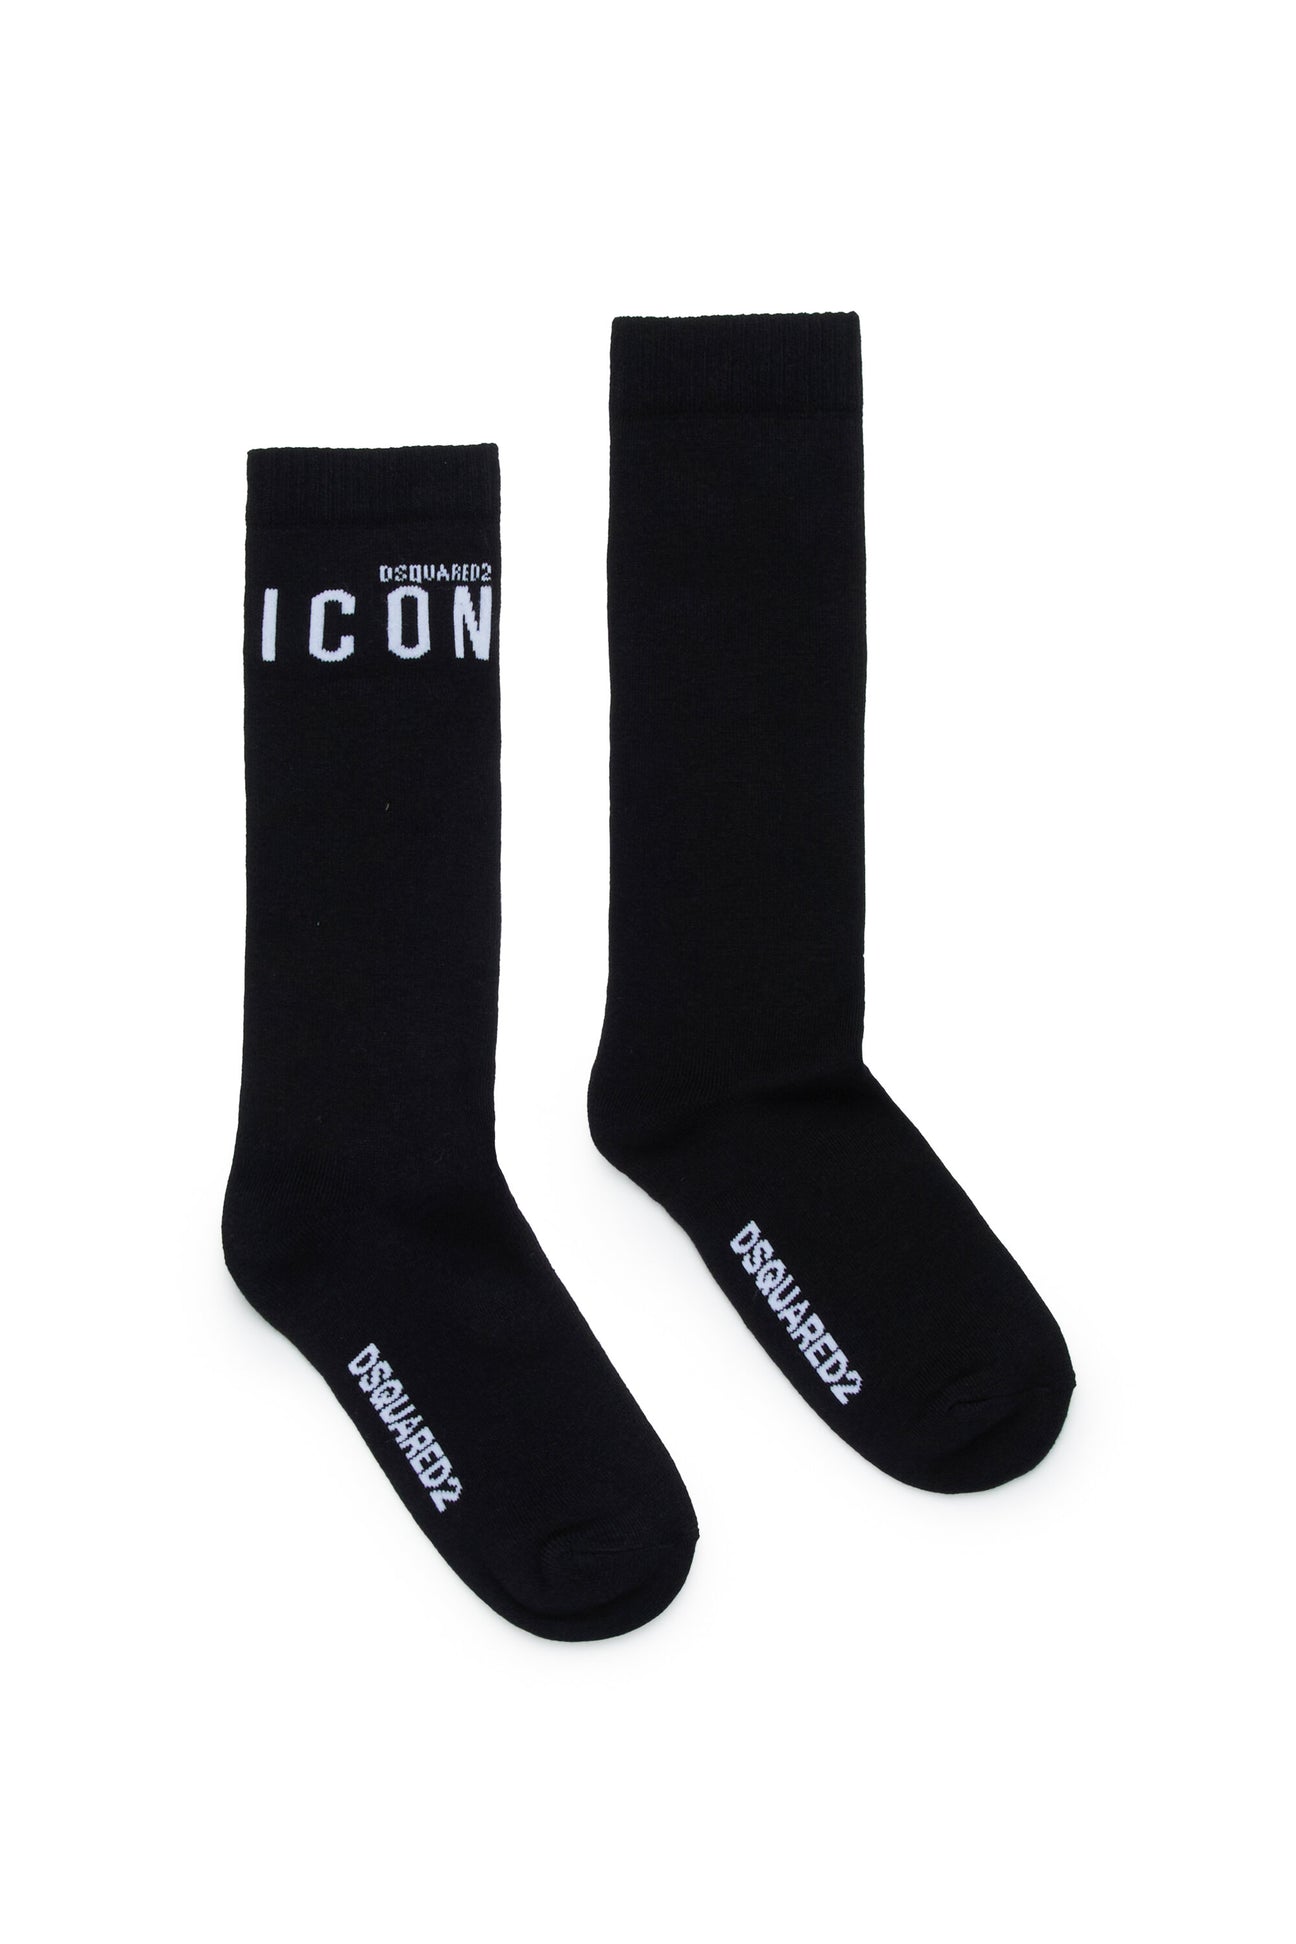 Calzini in cotone con logo ICON 